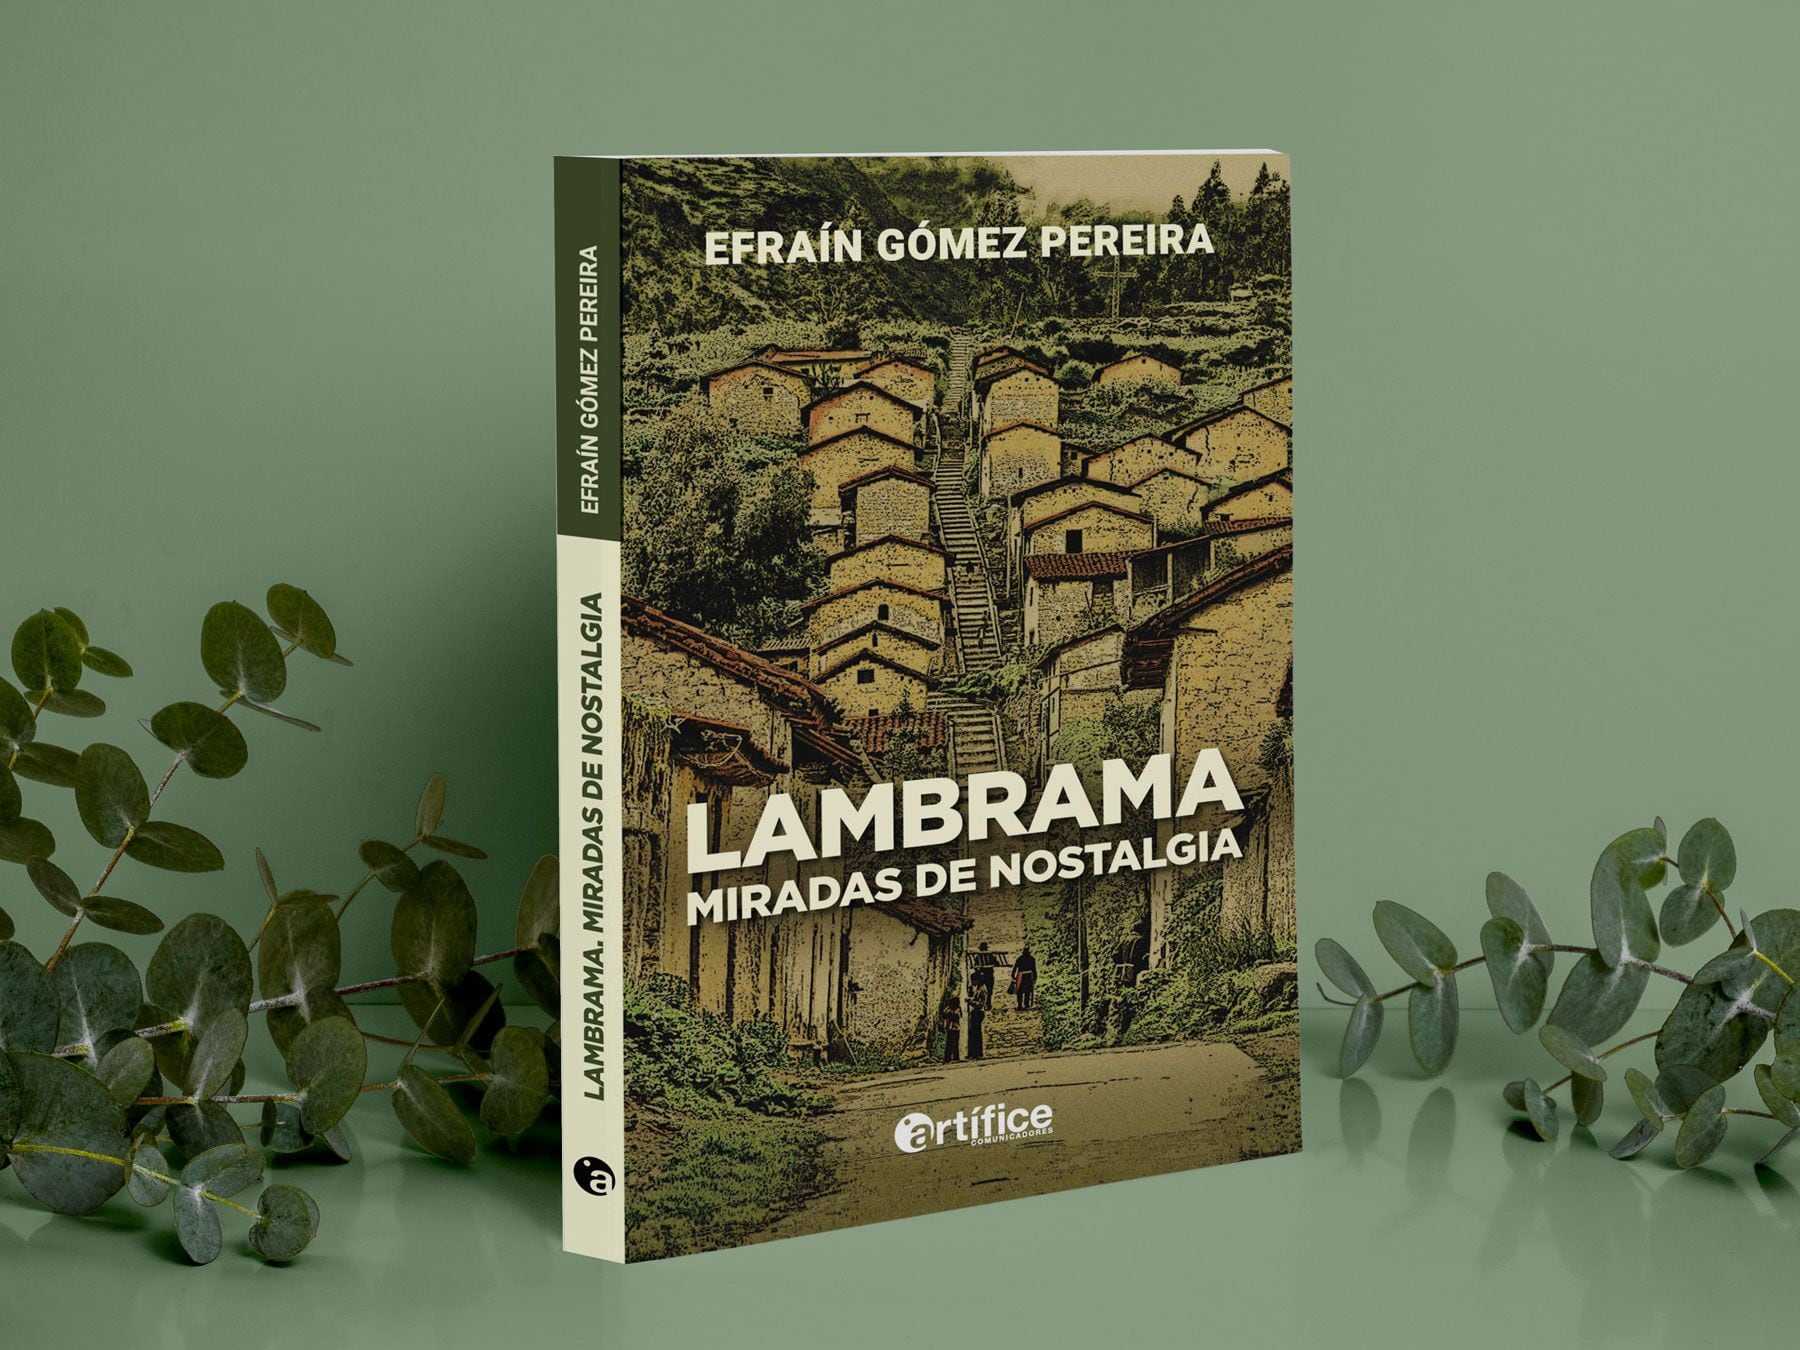 «Ламбрама». Miradas de nostalgia» - это второй бесплатный альбом Эфраина Гомеса, опубликованный Artifice Communicators. Фото: коммуникаторы Artifice